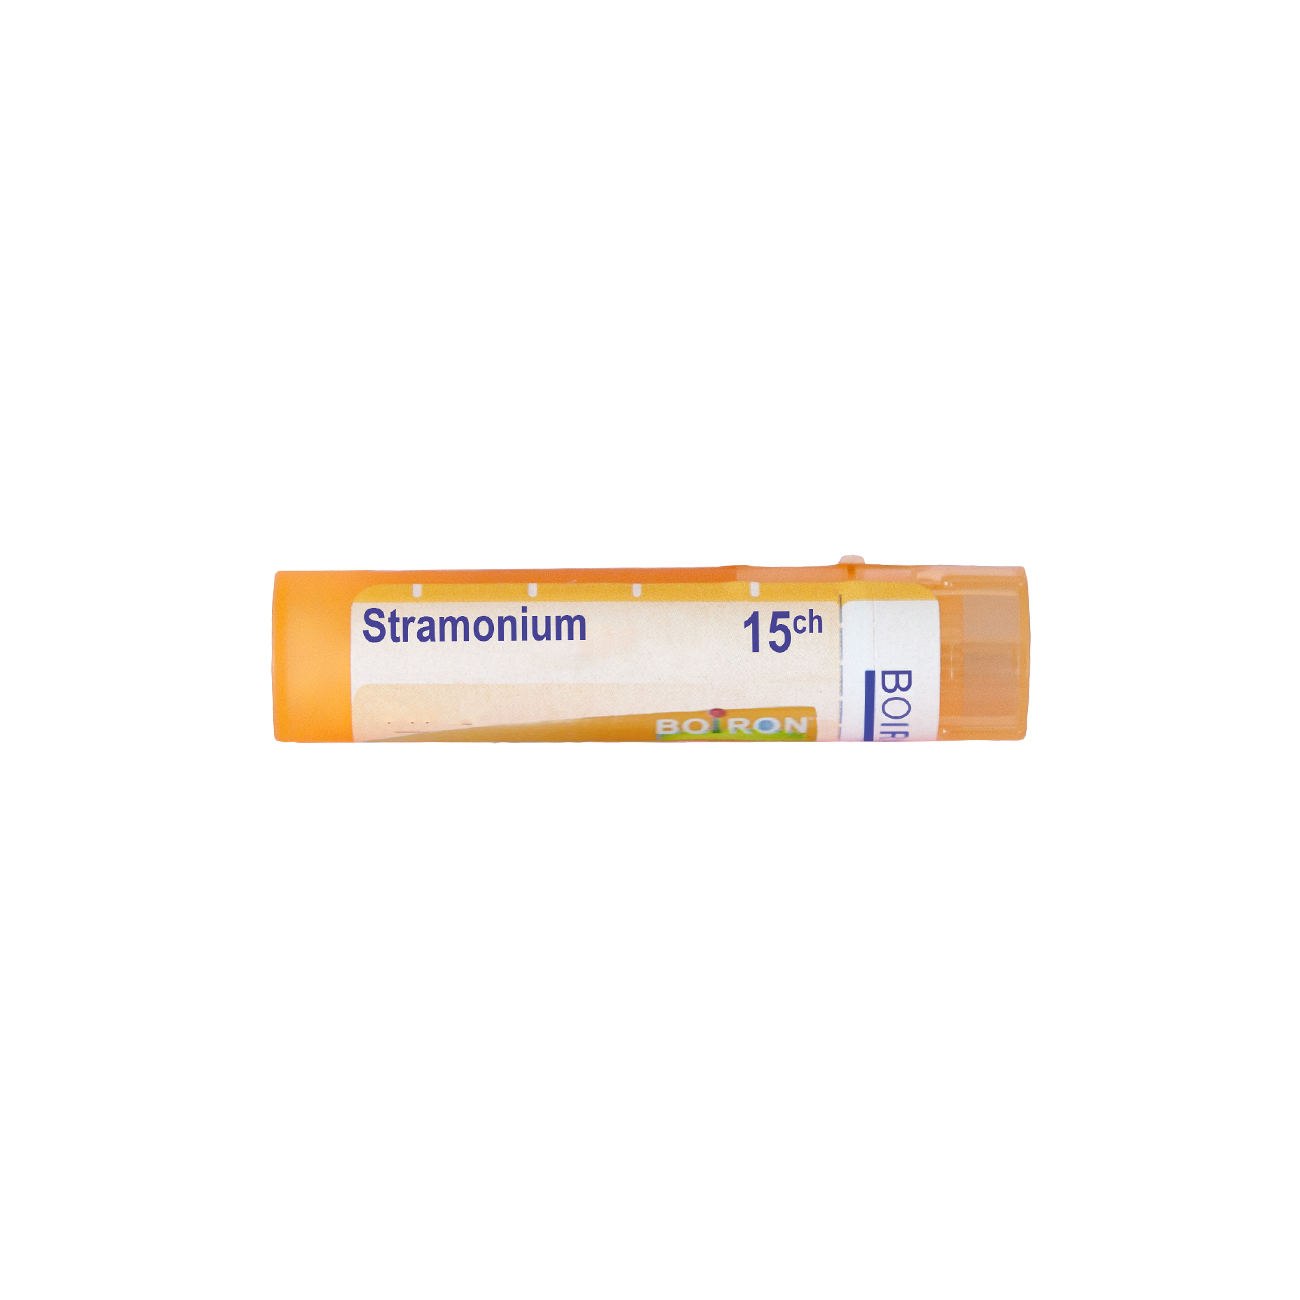 Страмониум 15 СН - Boiron - Аптеки 36.6